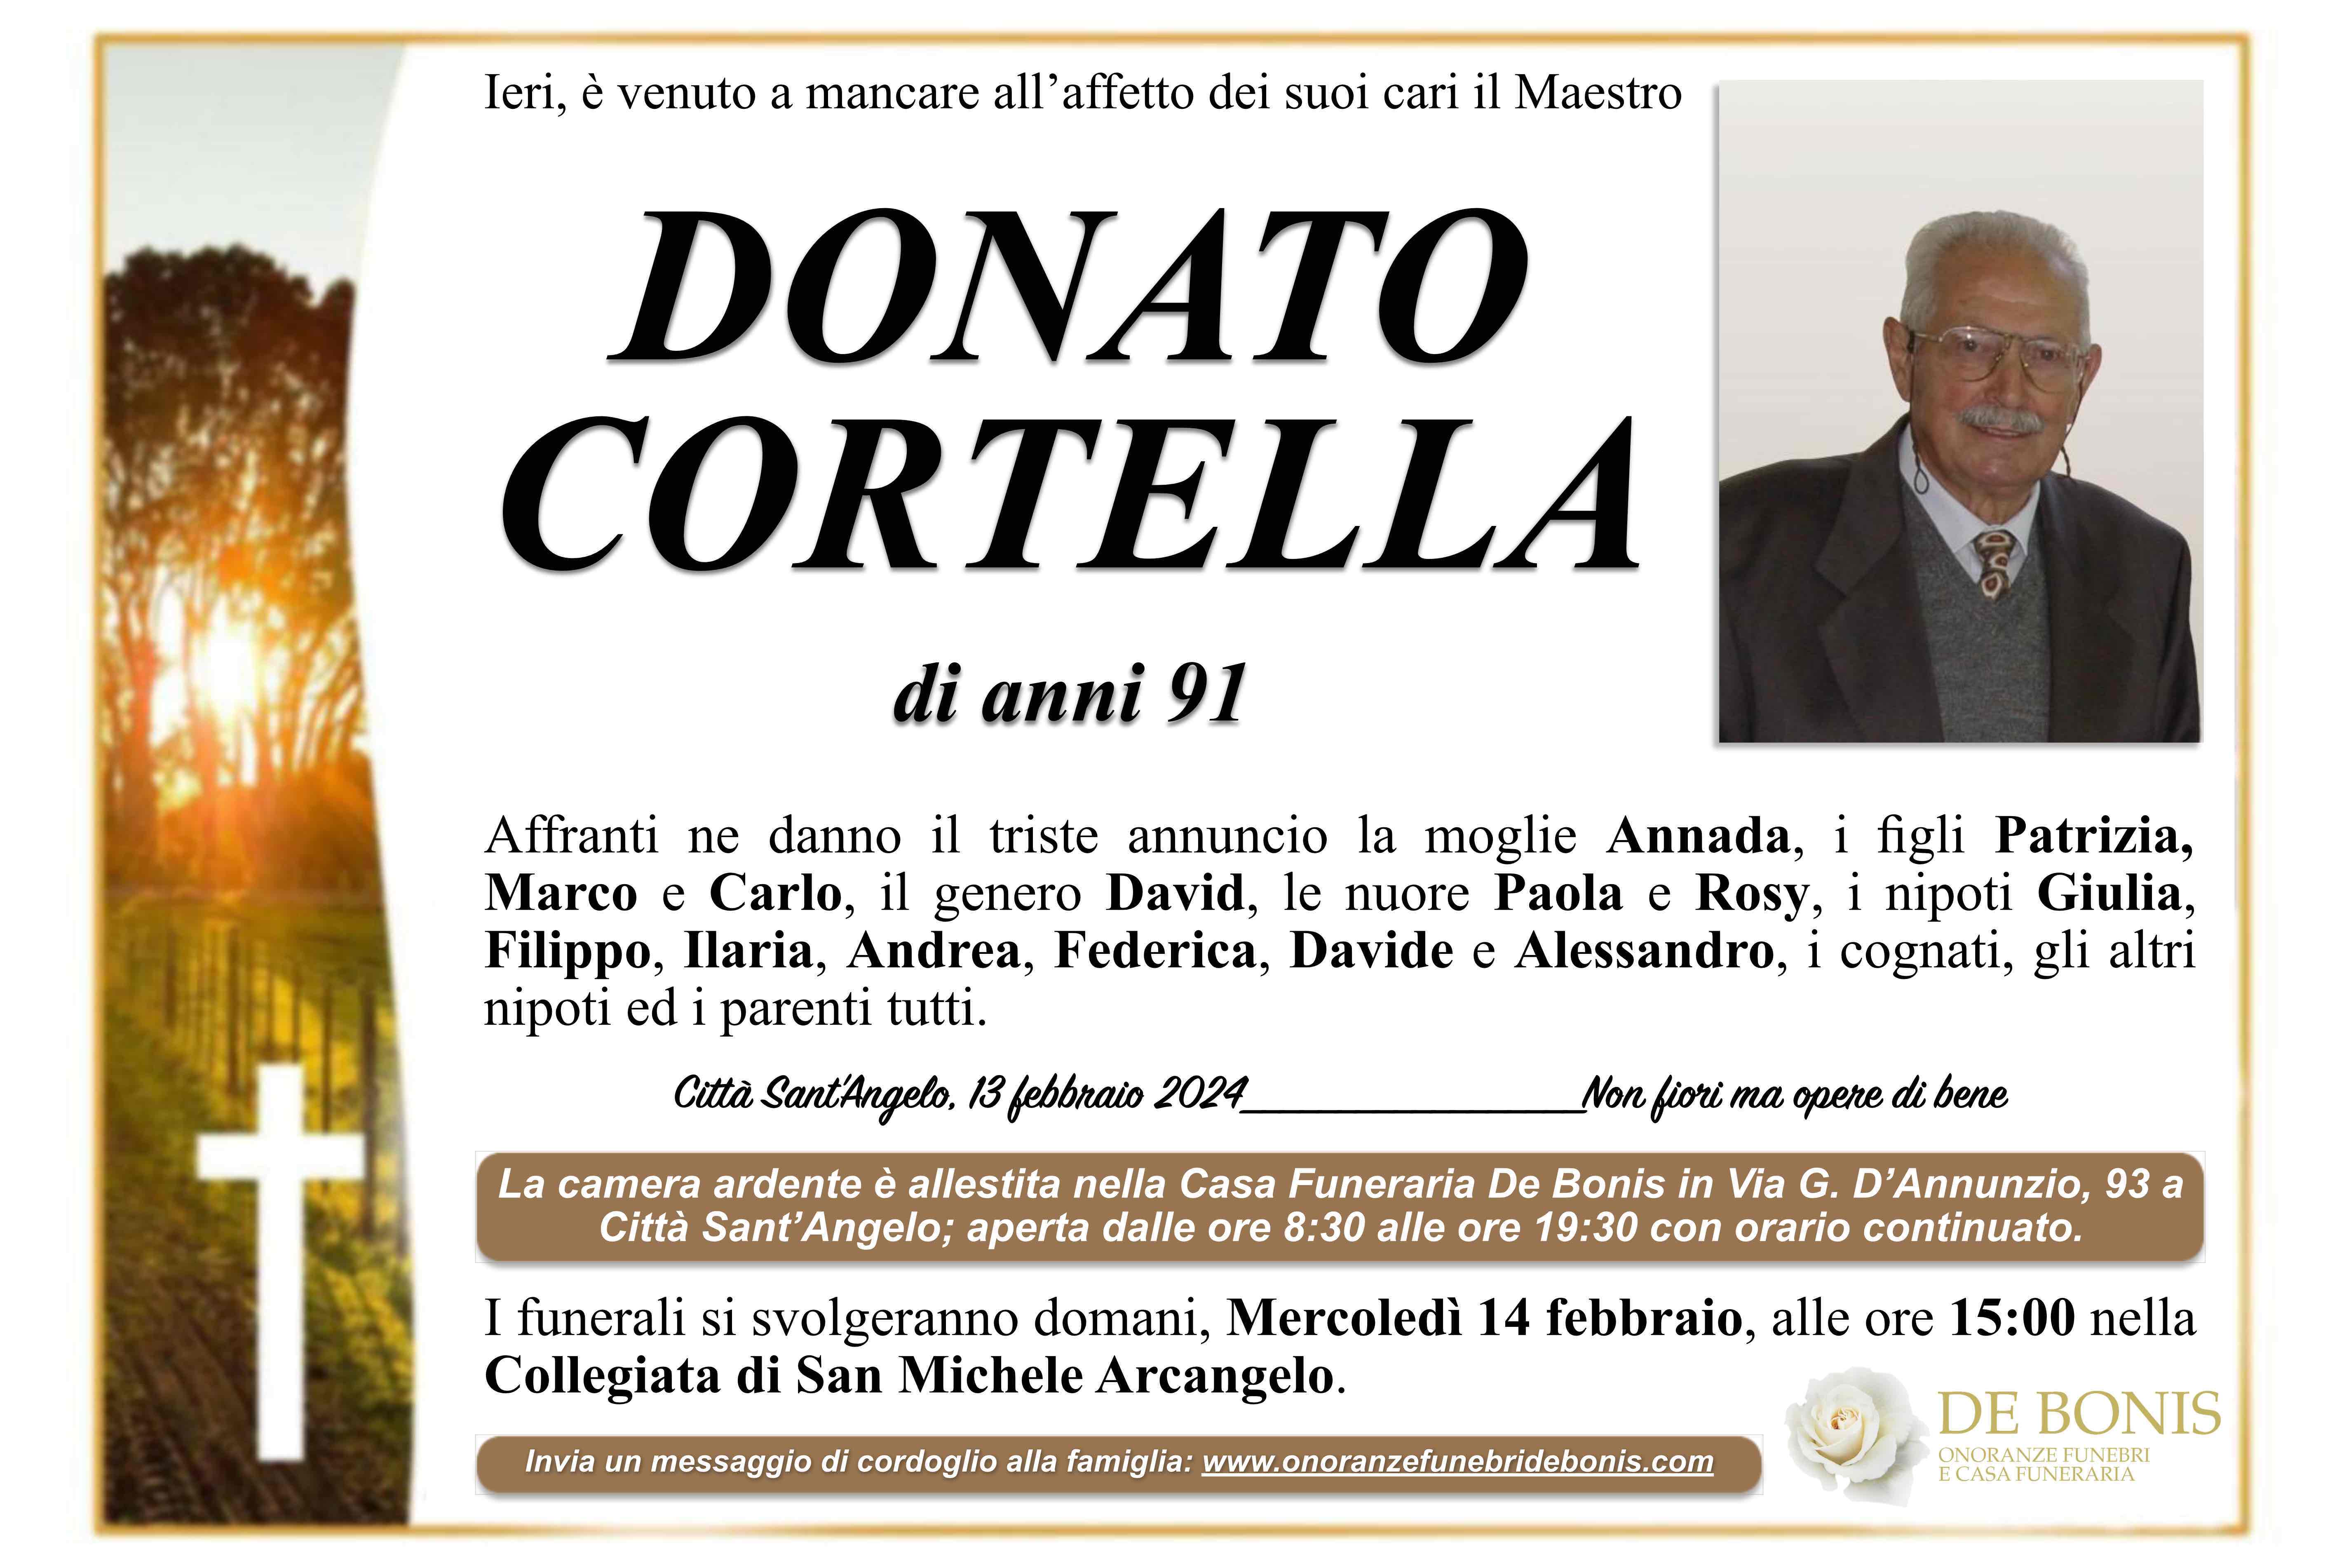 Donato Cortella